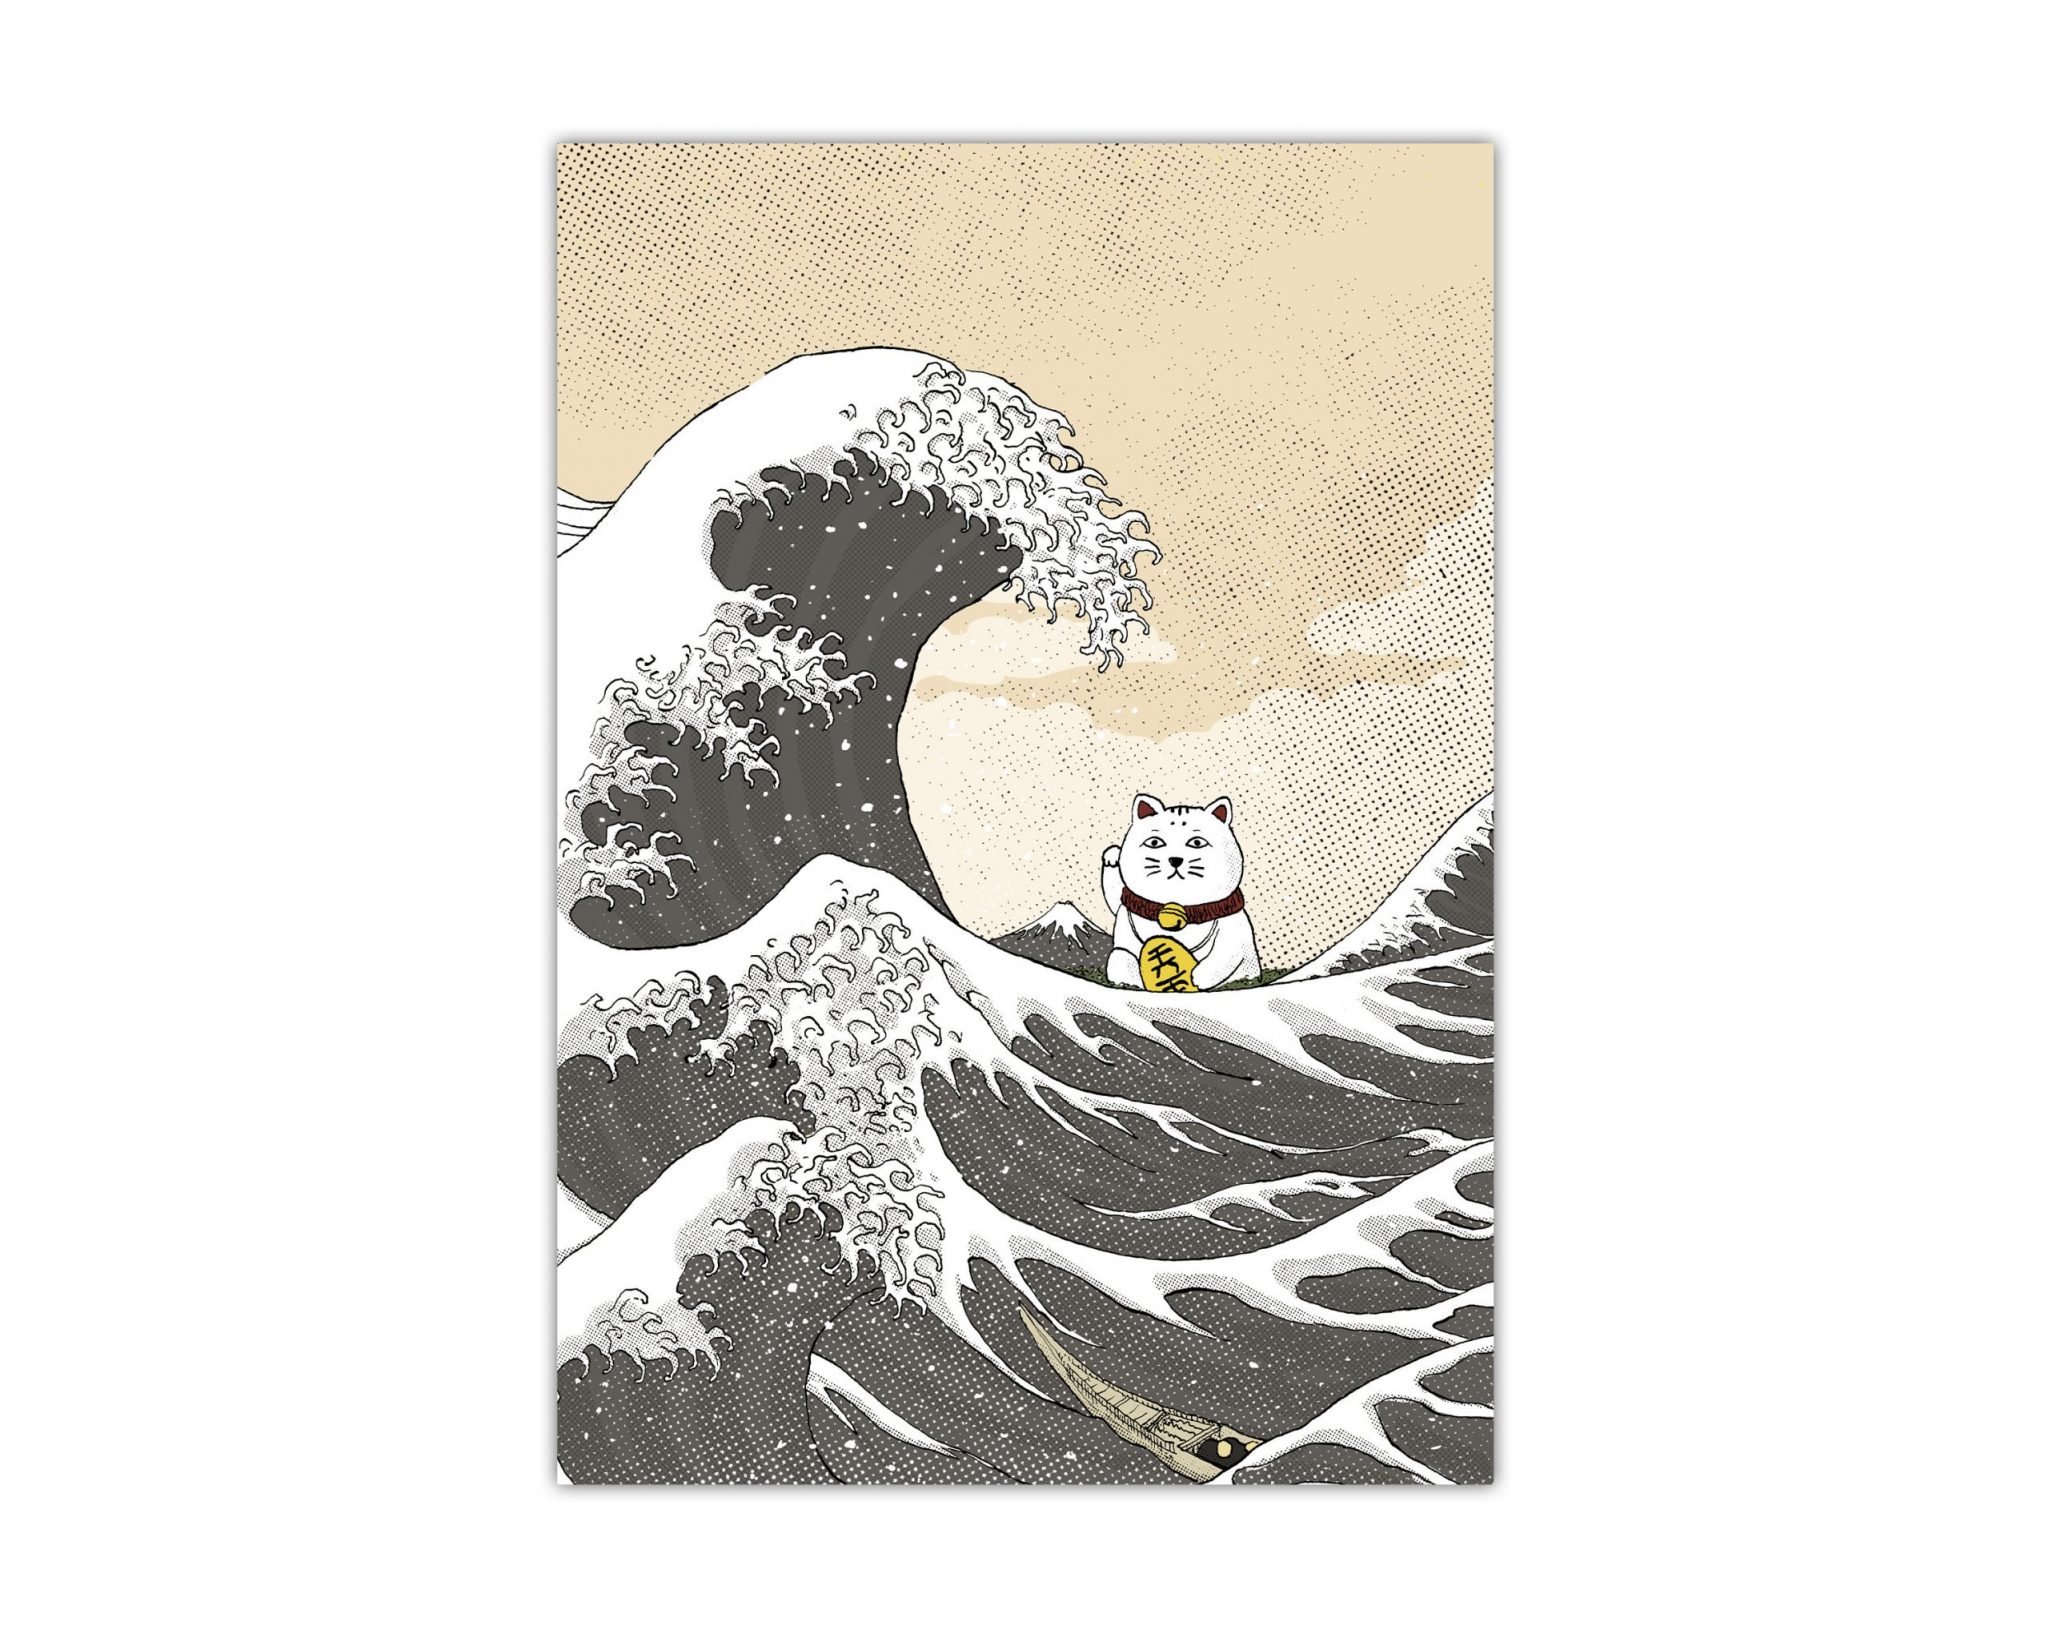 Lámina con una ilustración de el gato de la suerte (maneki neko) y el dibujo de La Gran Ola de Hokusai